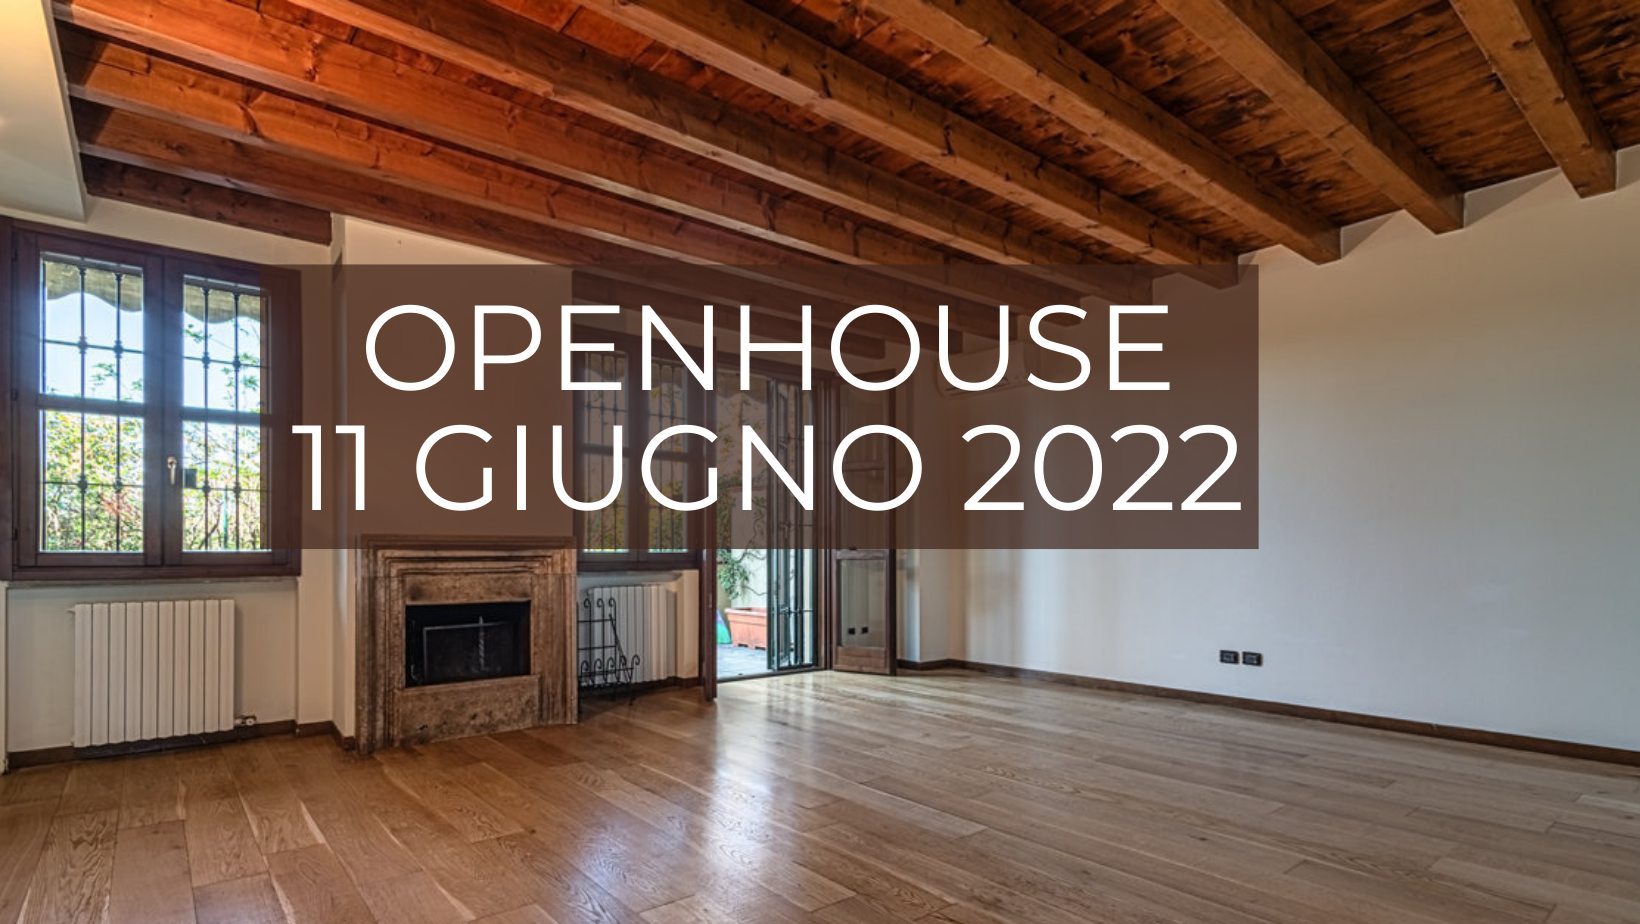 Openhouse 11 giugno – Villa Peschiera Borromeo